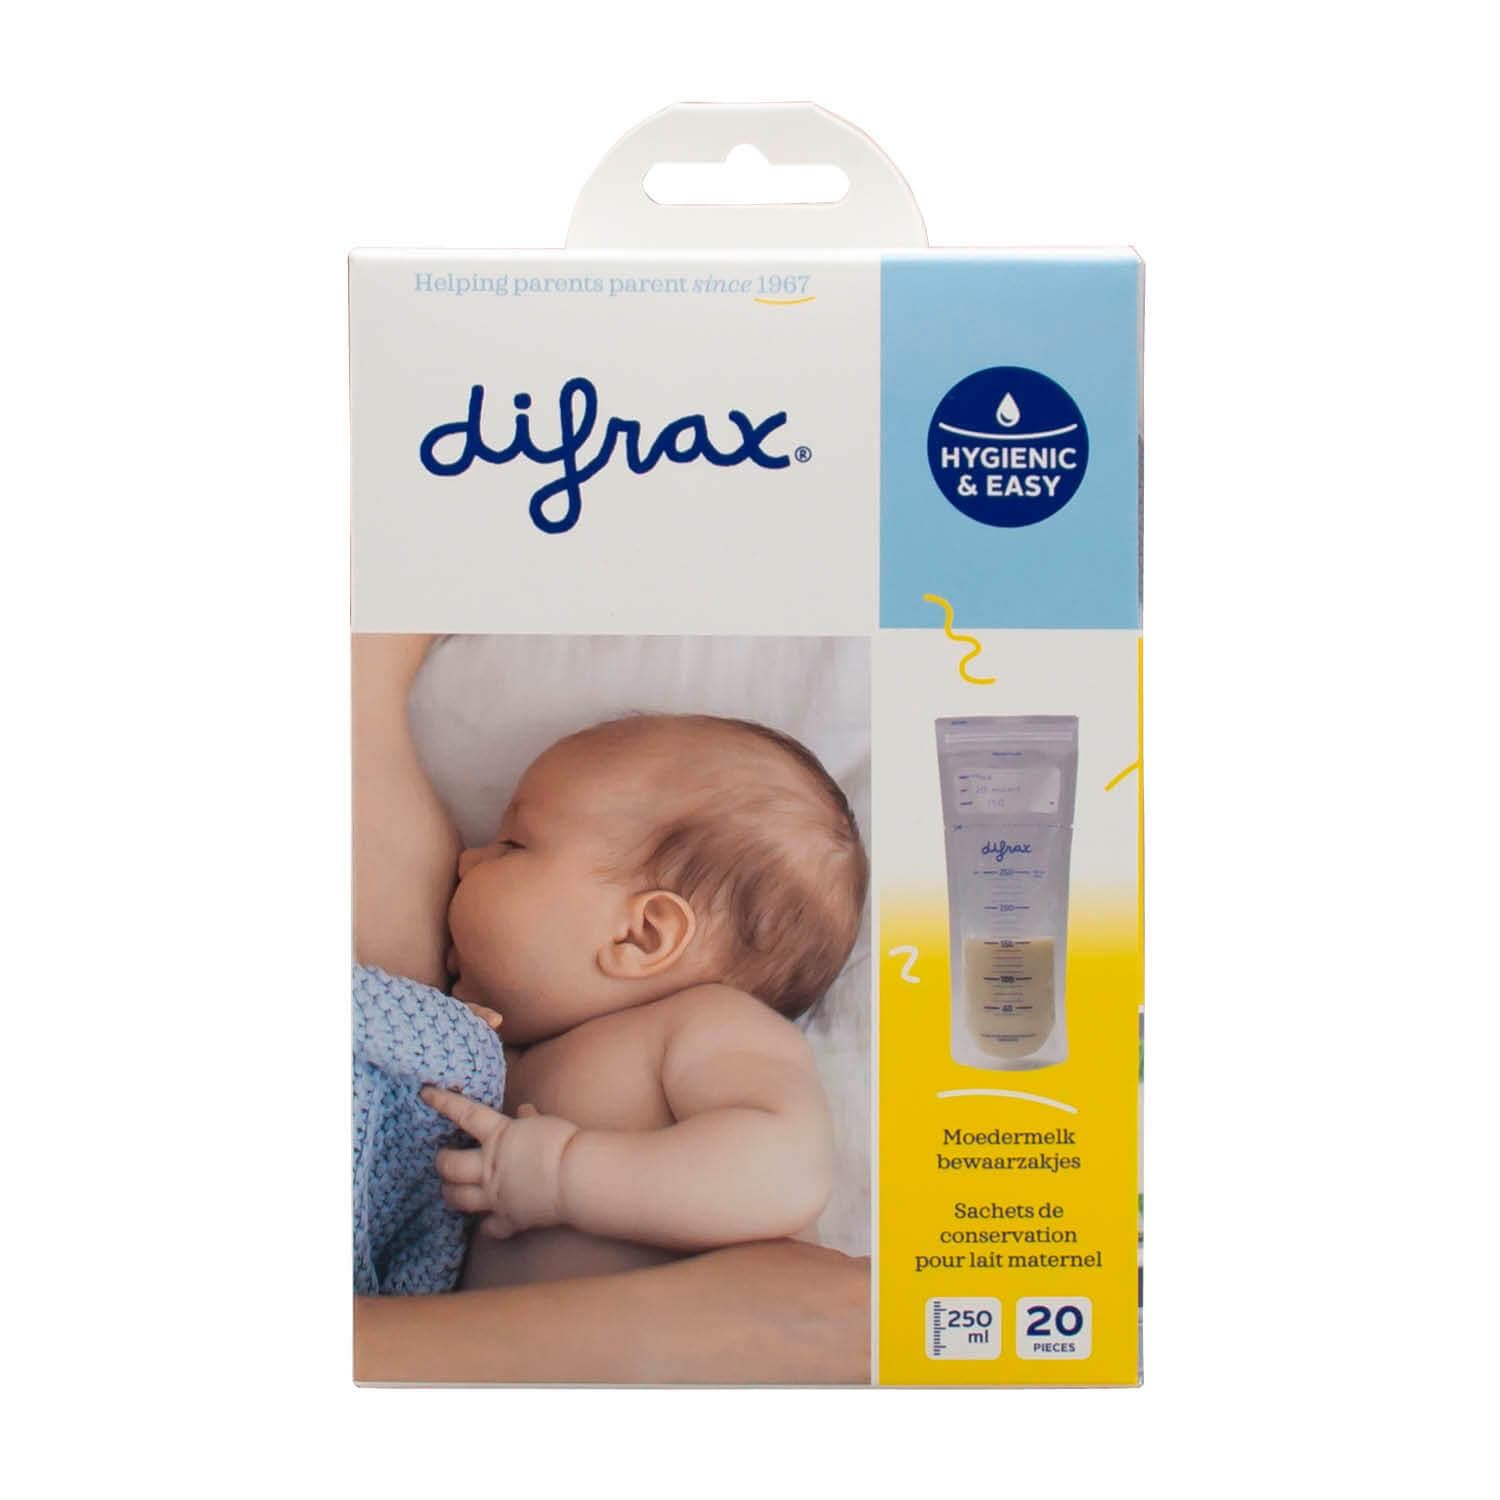 Moedermelk bewaarzakjes - 20 stuks - Difrax